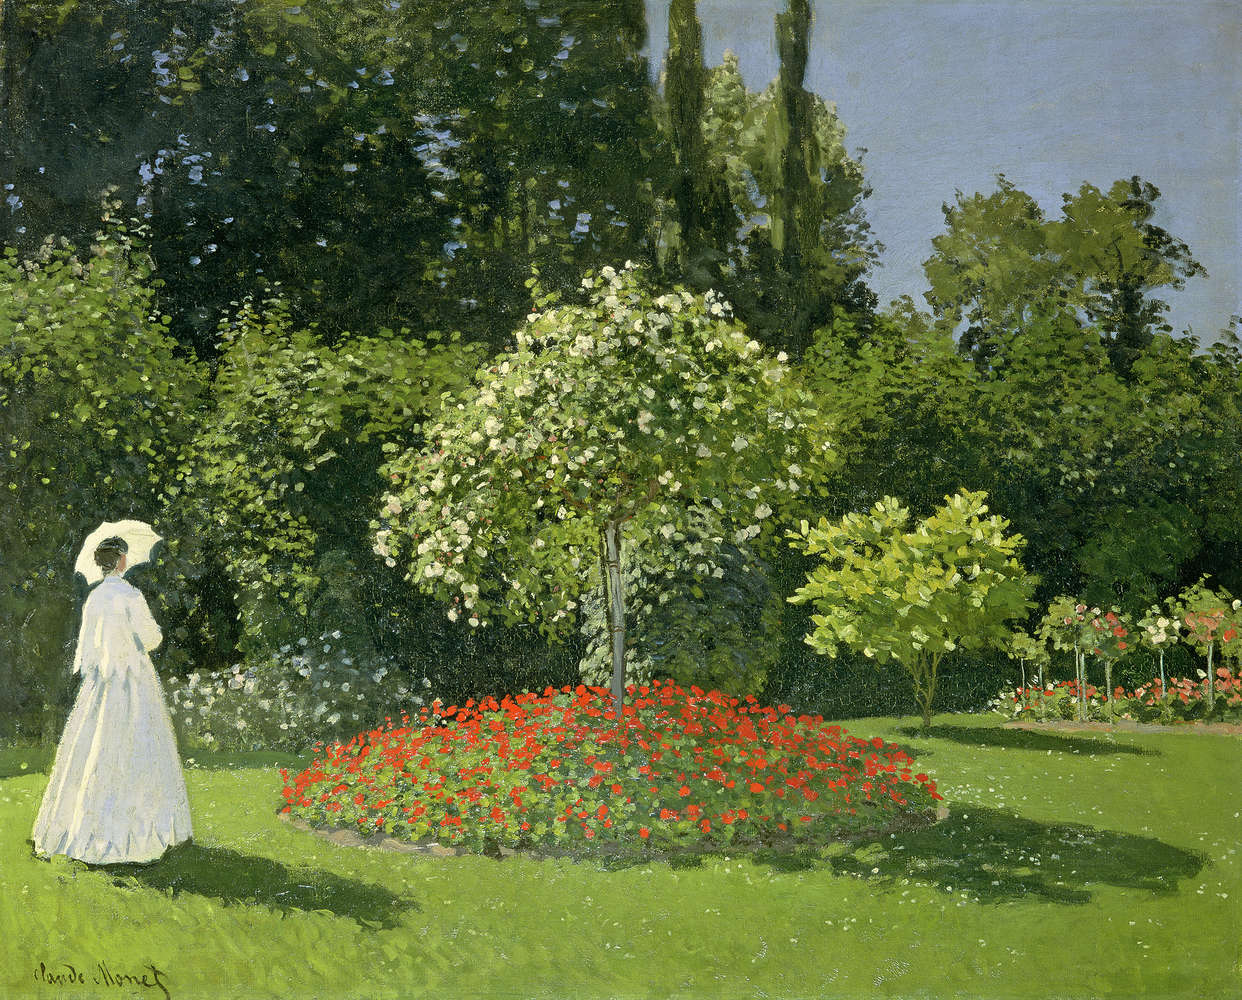             Fototapete "Frau im Garten" von Claude Monet
        